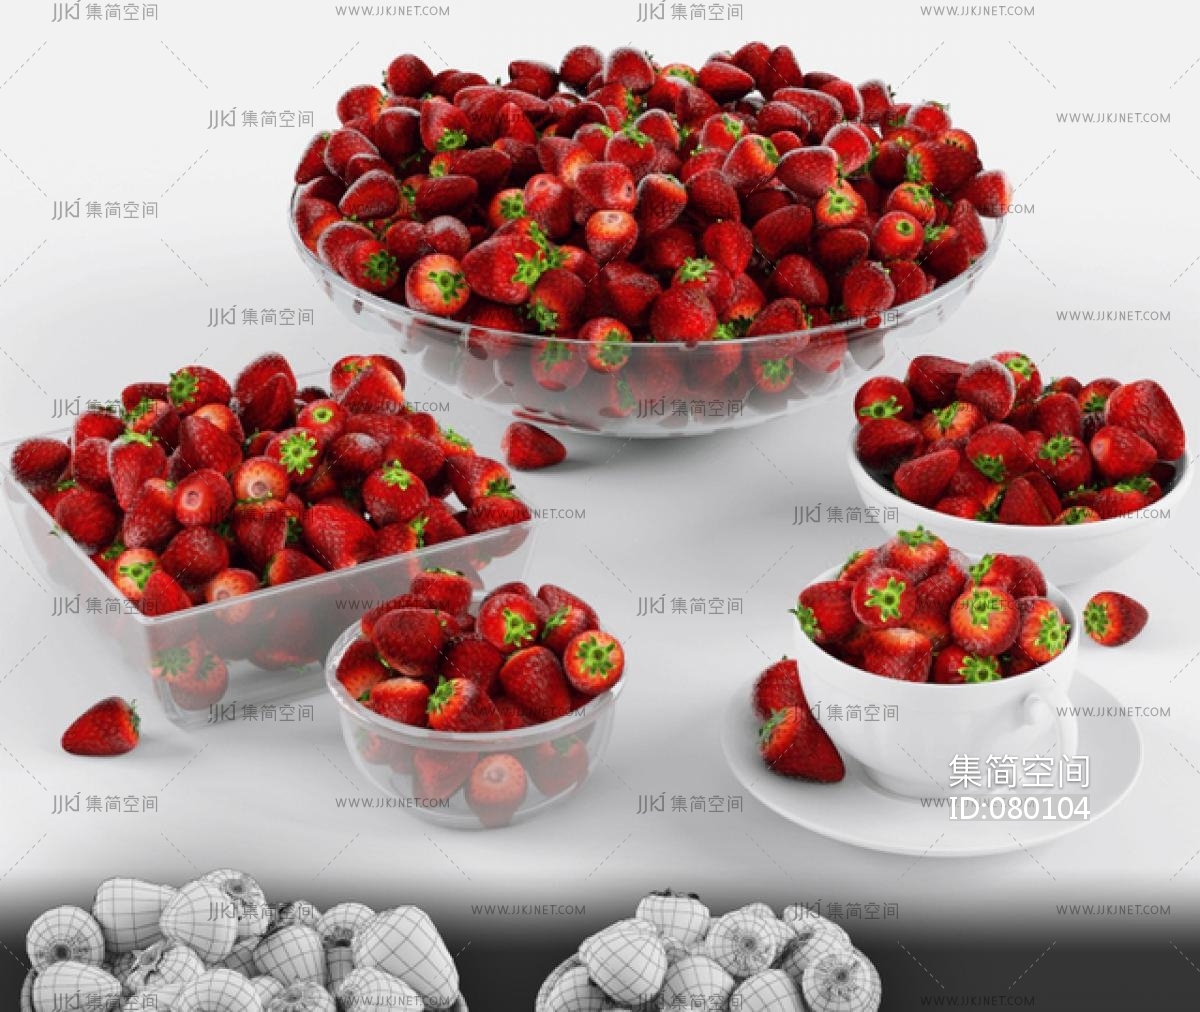 树莓、樱桃和草莓的背景，最上面的风景 混合浆果 库存图片. 图片 包括有 食物, 混杂, 背包, 特写镜头 - 160341417